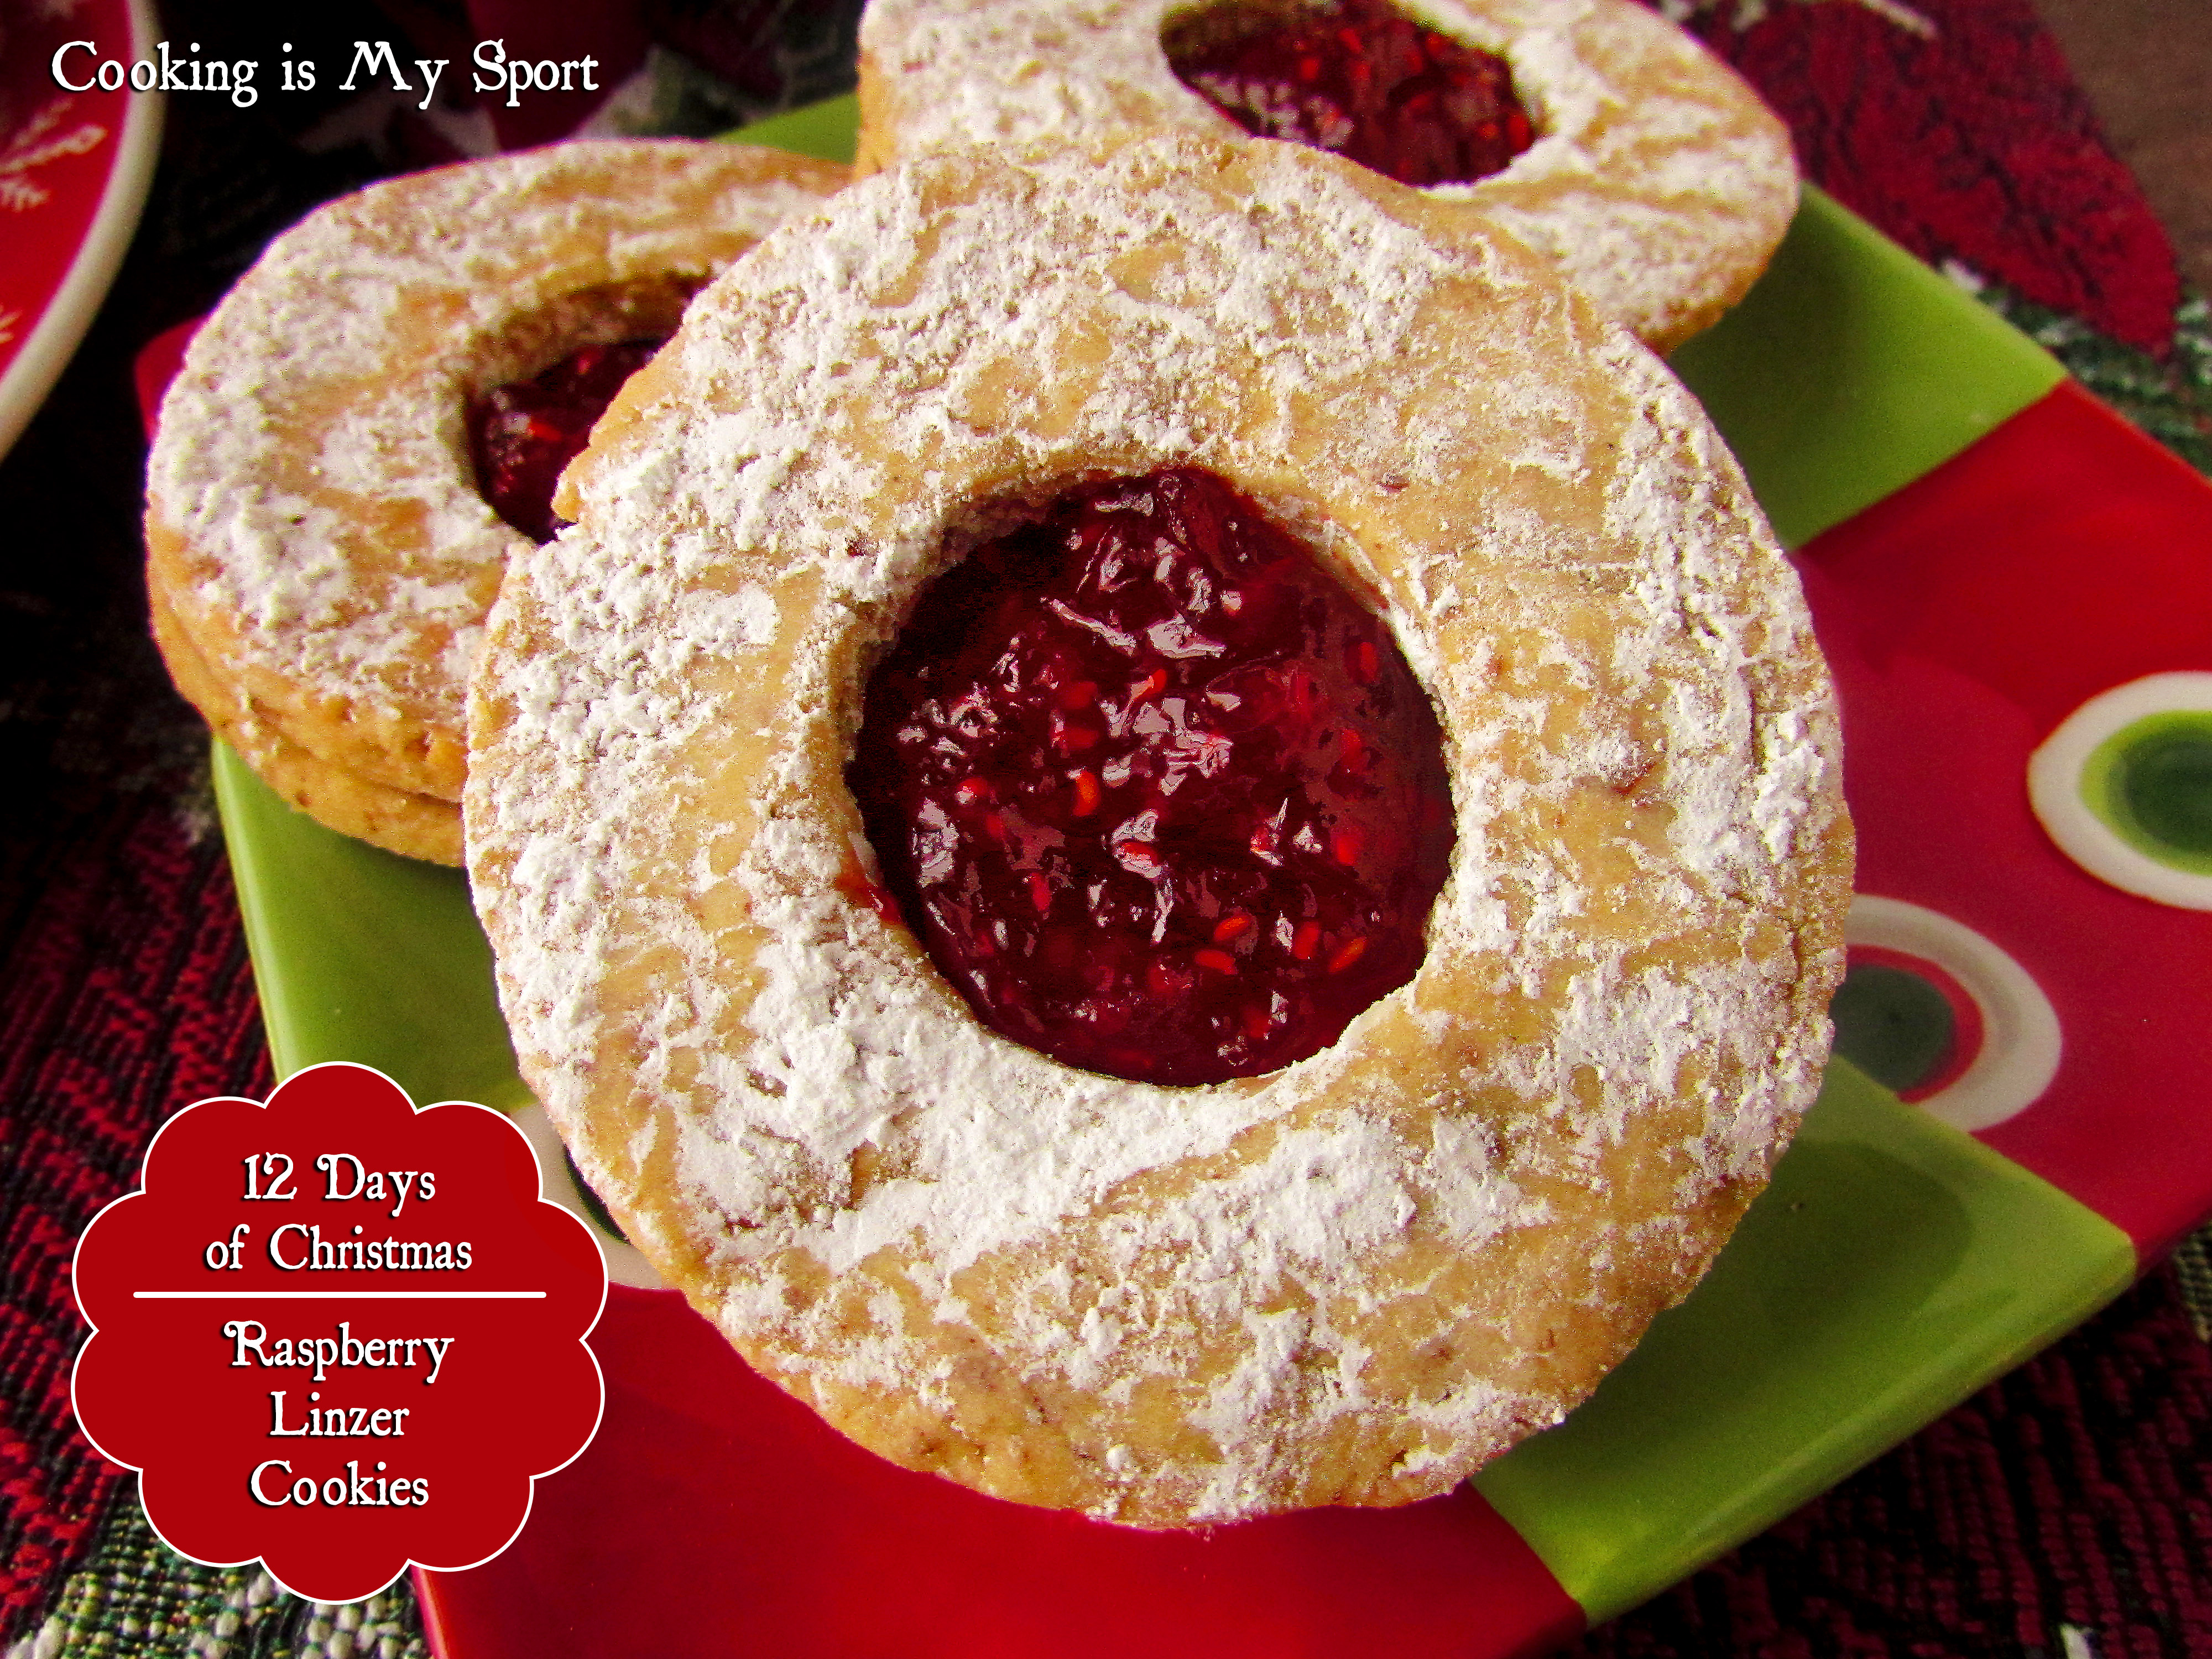 Raspberry Linzer Cookies1